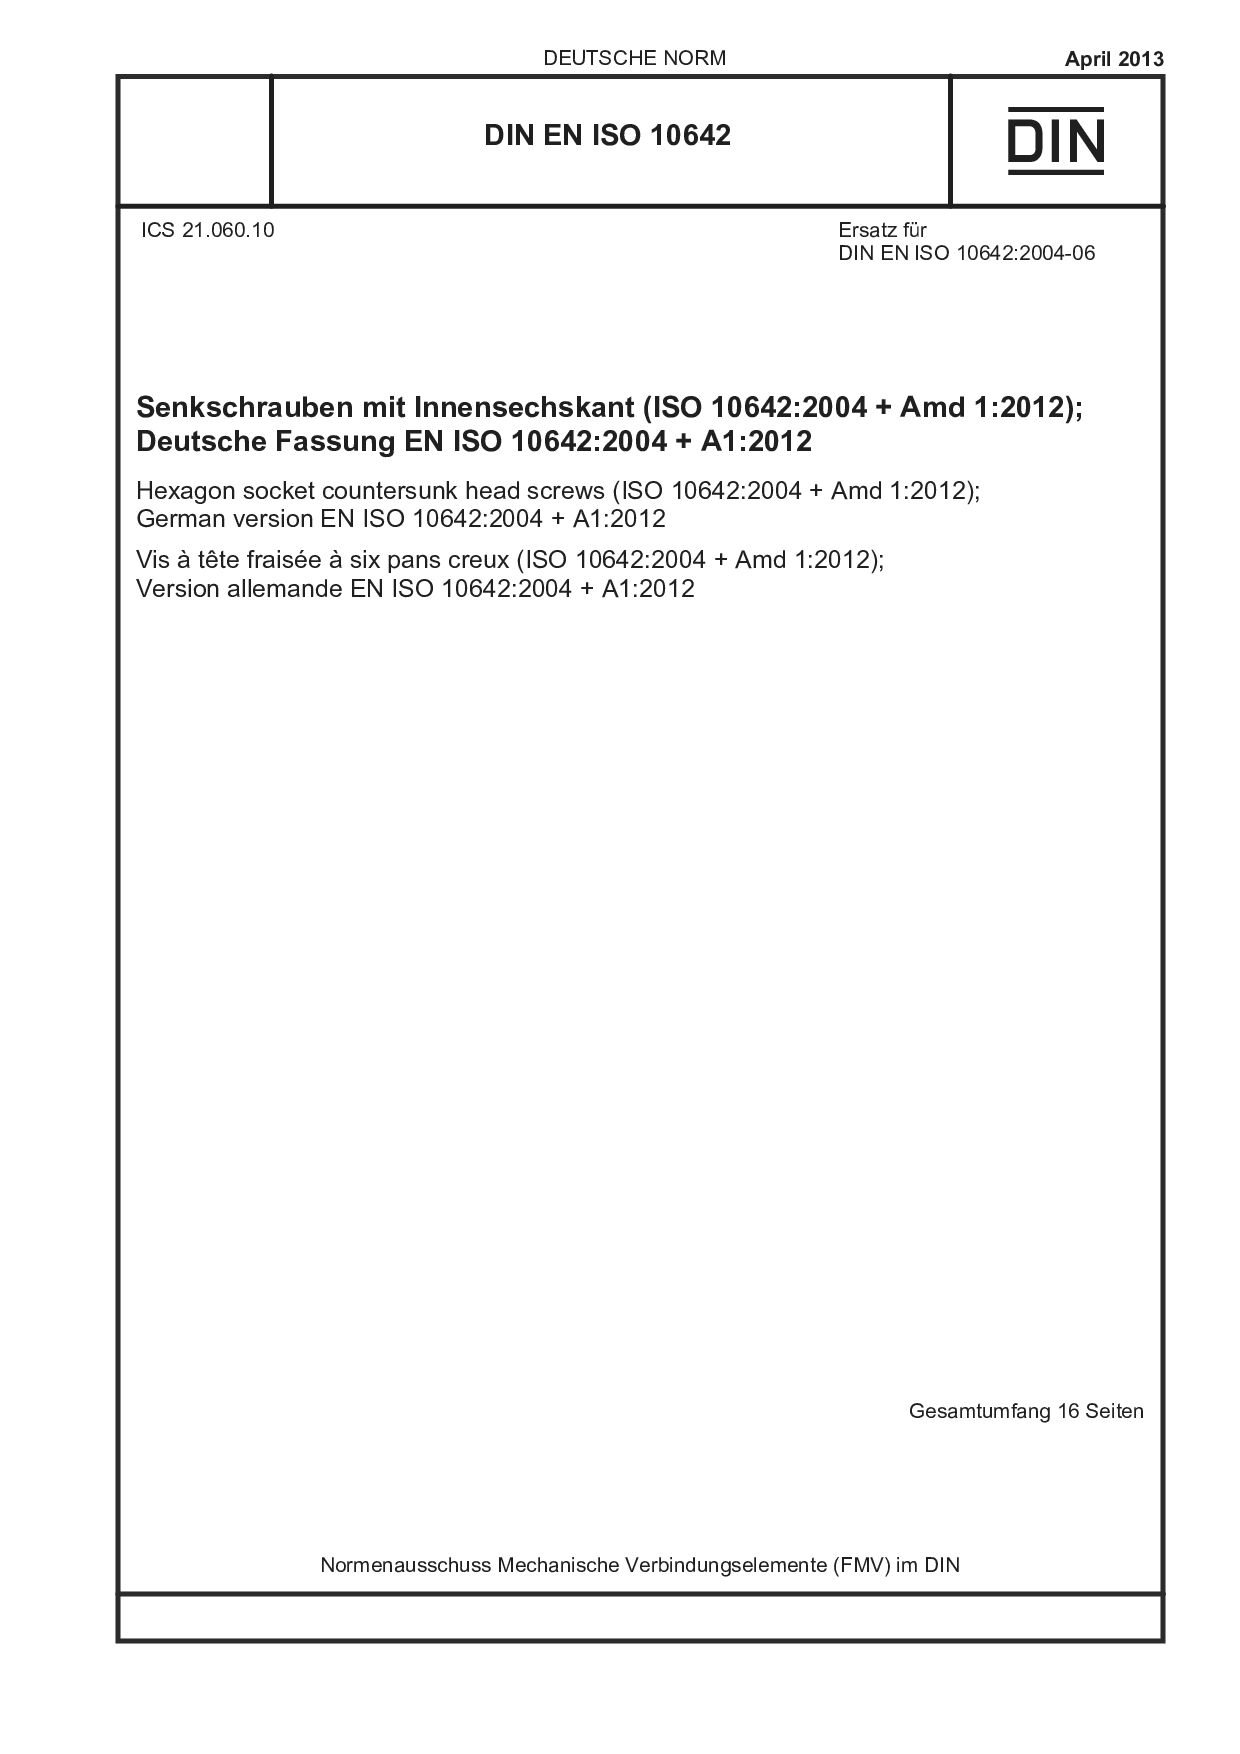 DIN EN ISO 10642:2013